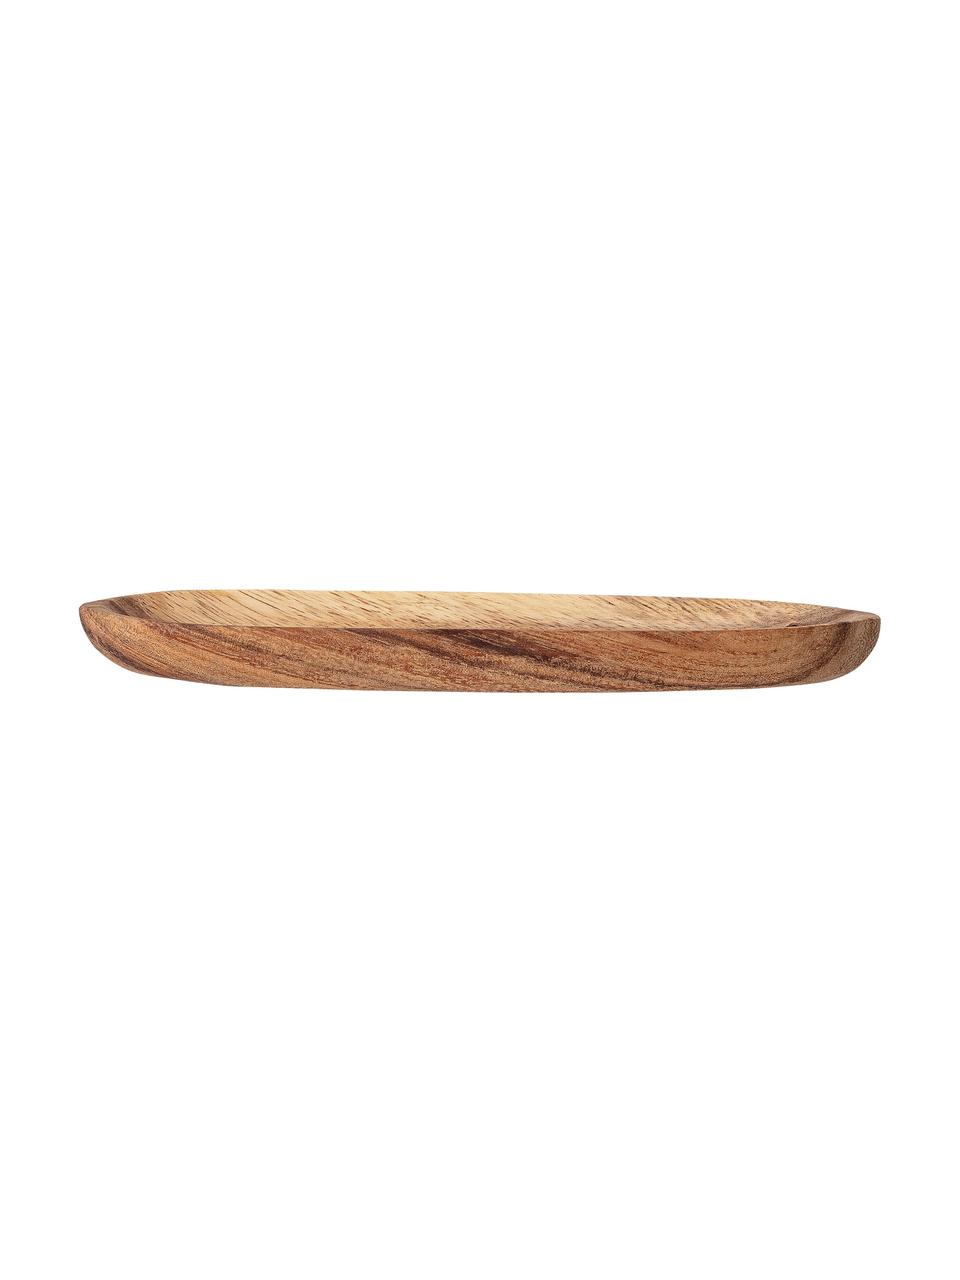 Servírovací talíř z akátového dřeva Evely, D 20 cm x Š 5 cm, Hnědá